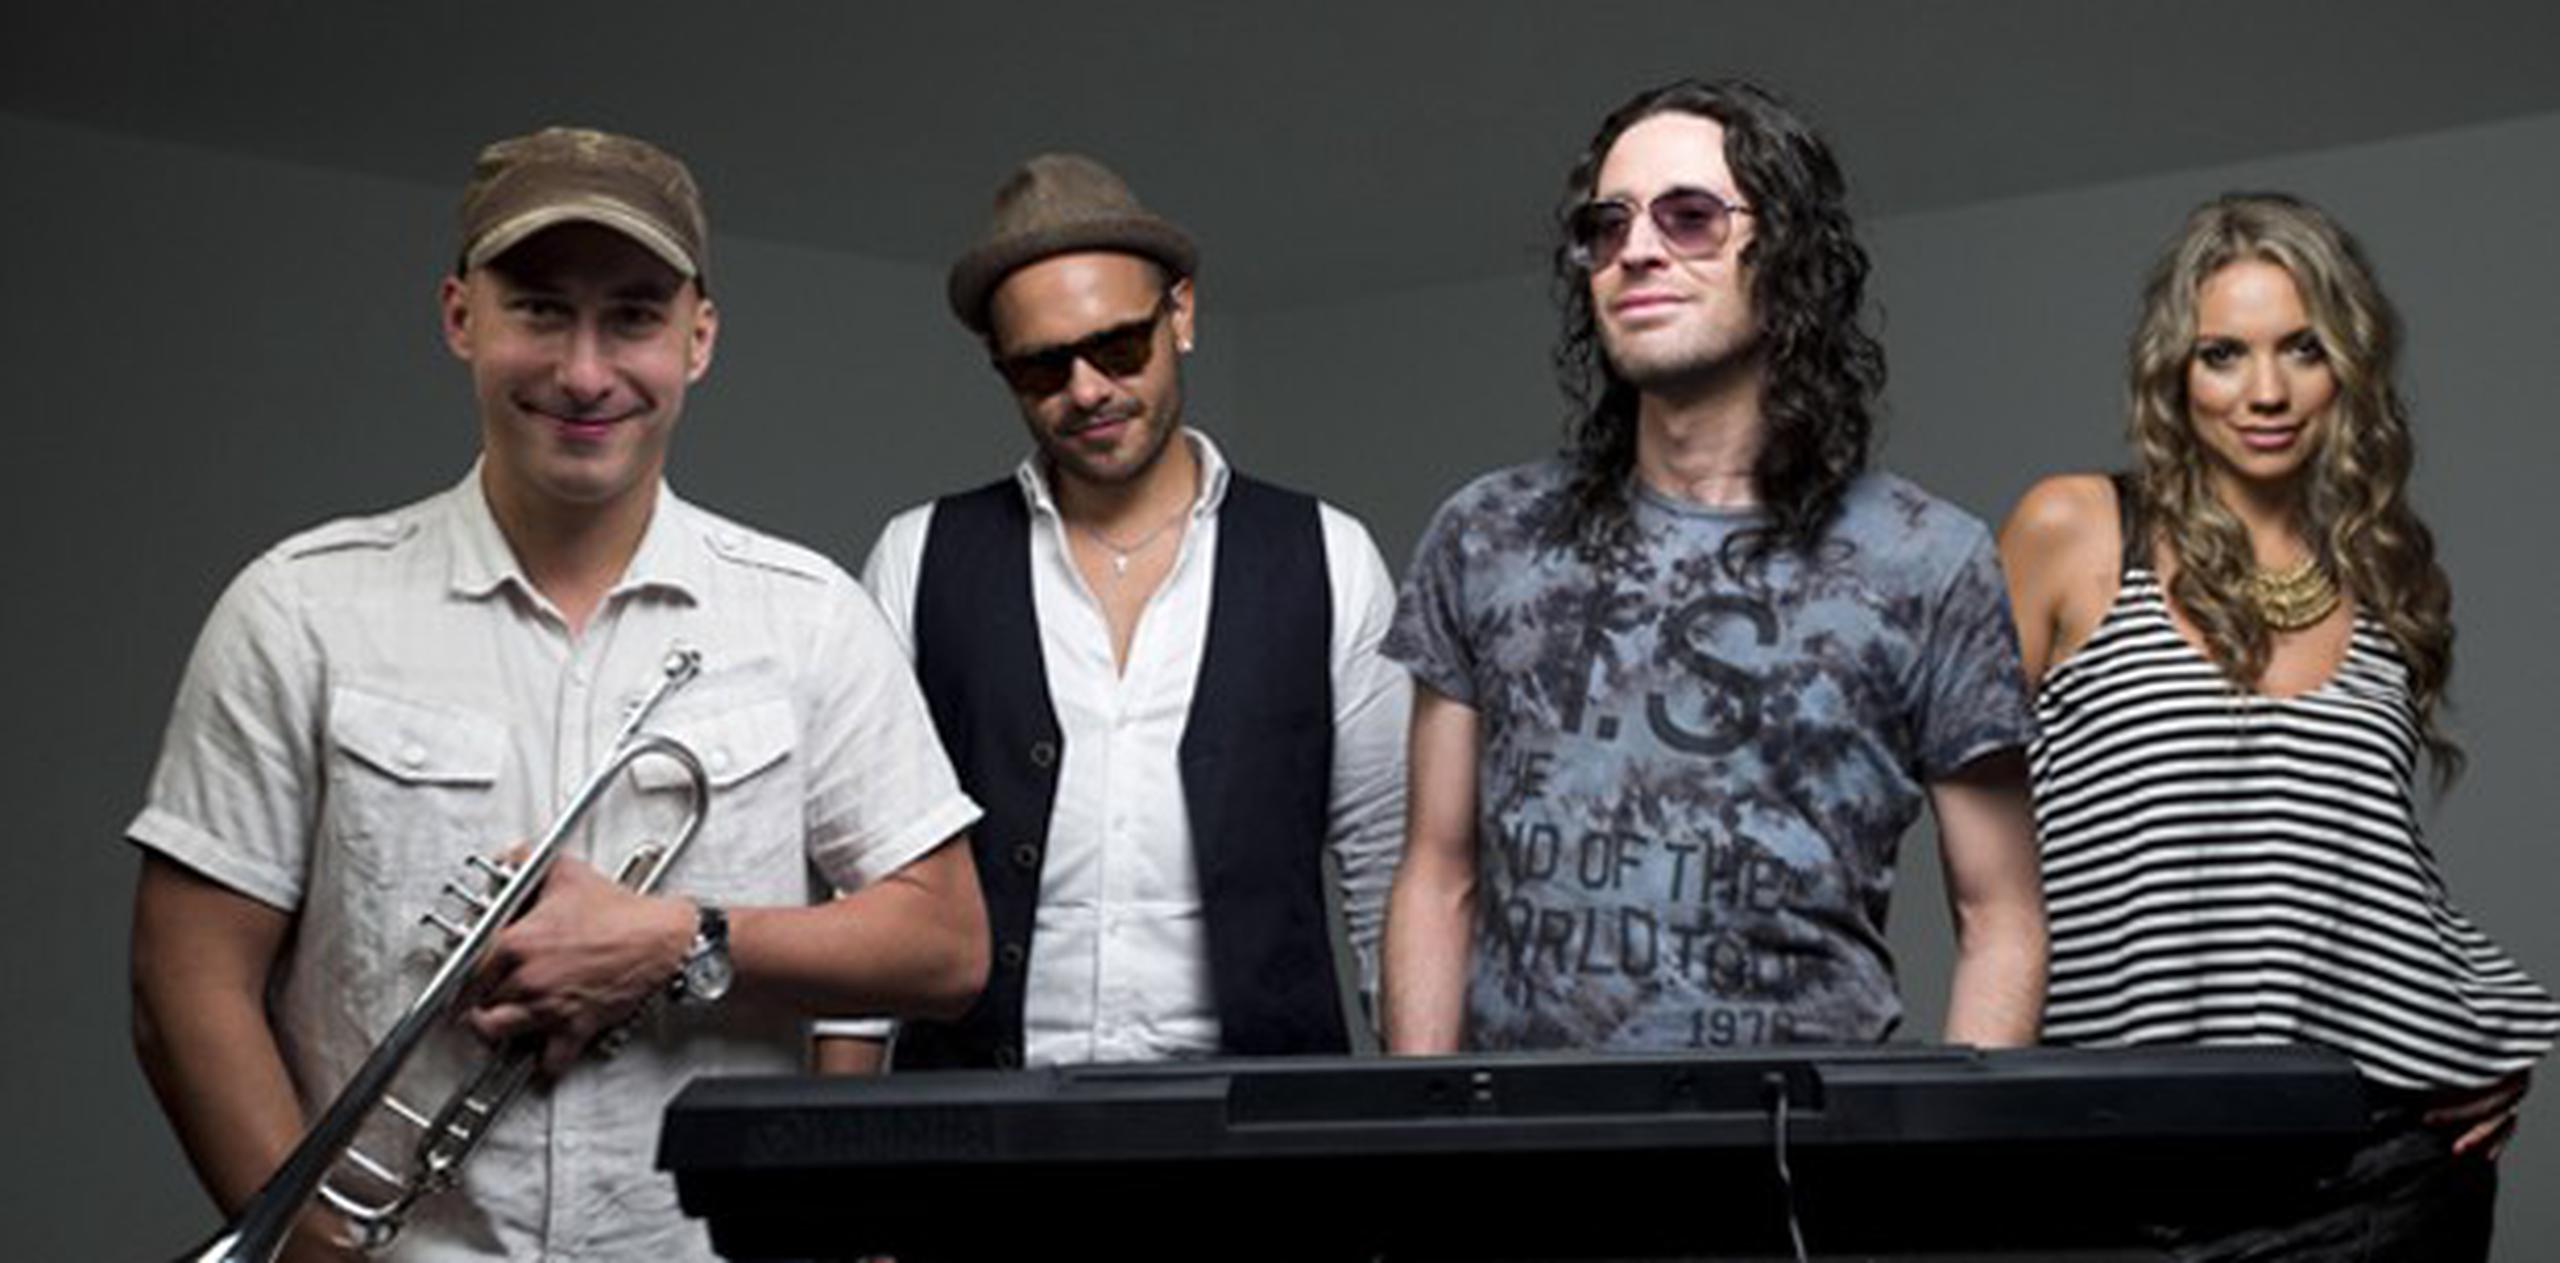 La banda colombiana Mojito Lite vuelve a escucharse con el tema “Quemando amor”. (Archivo)